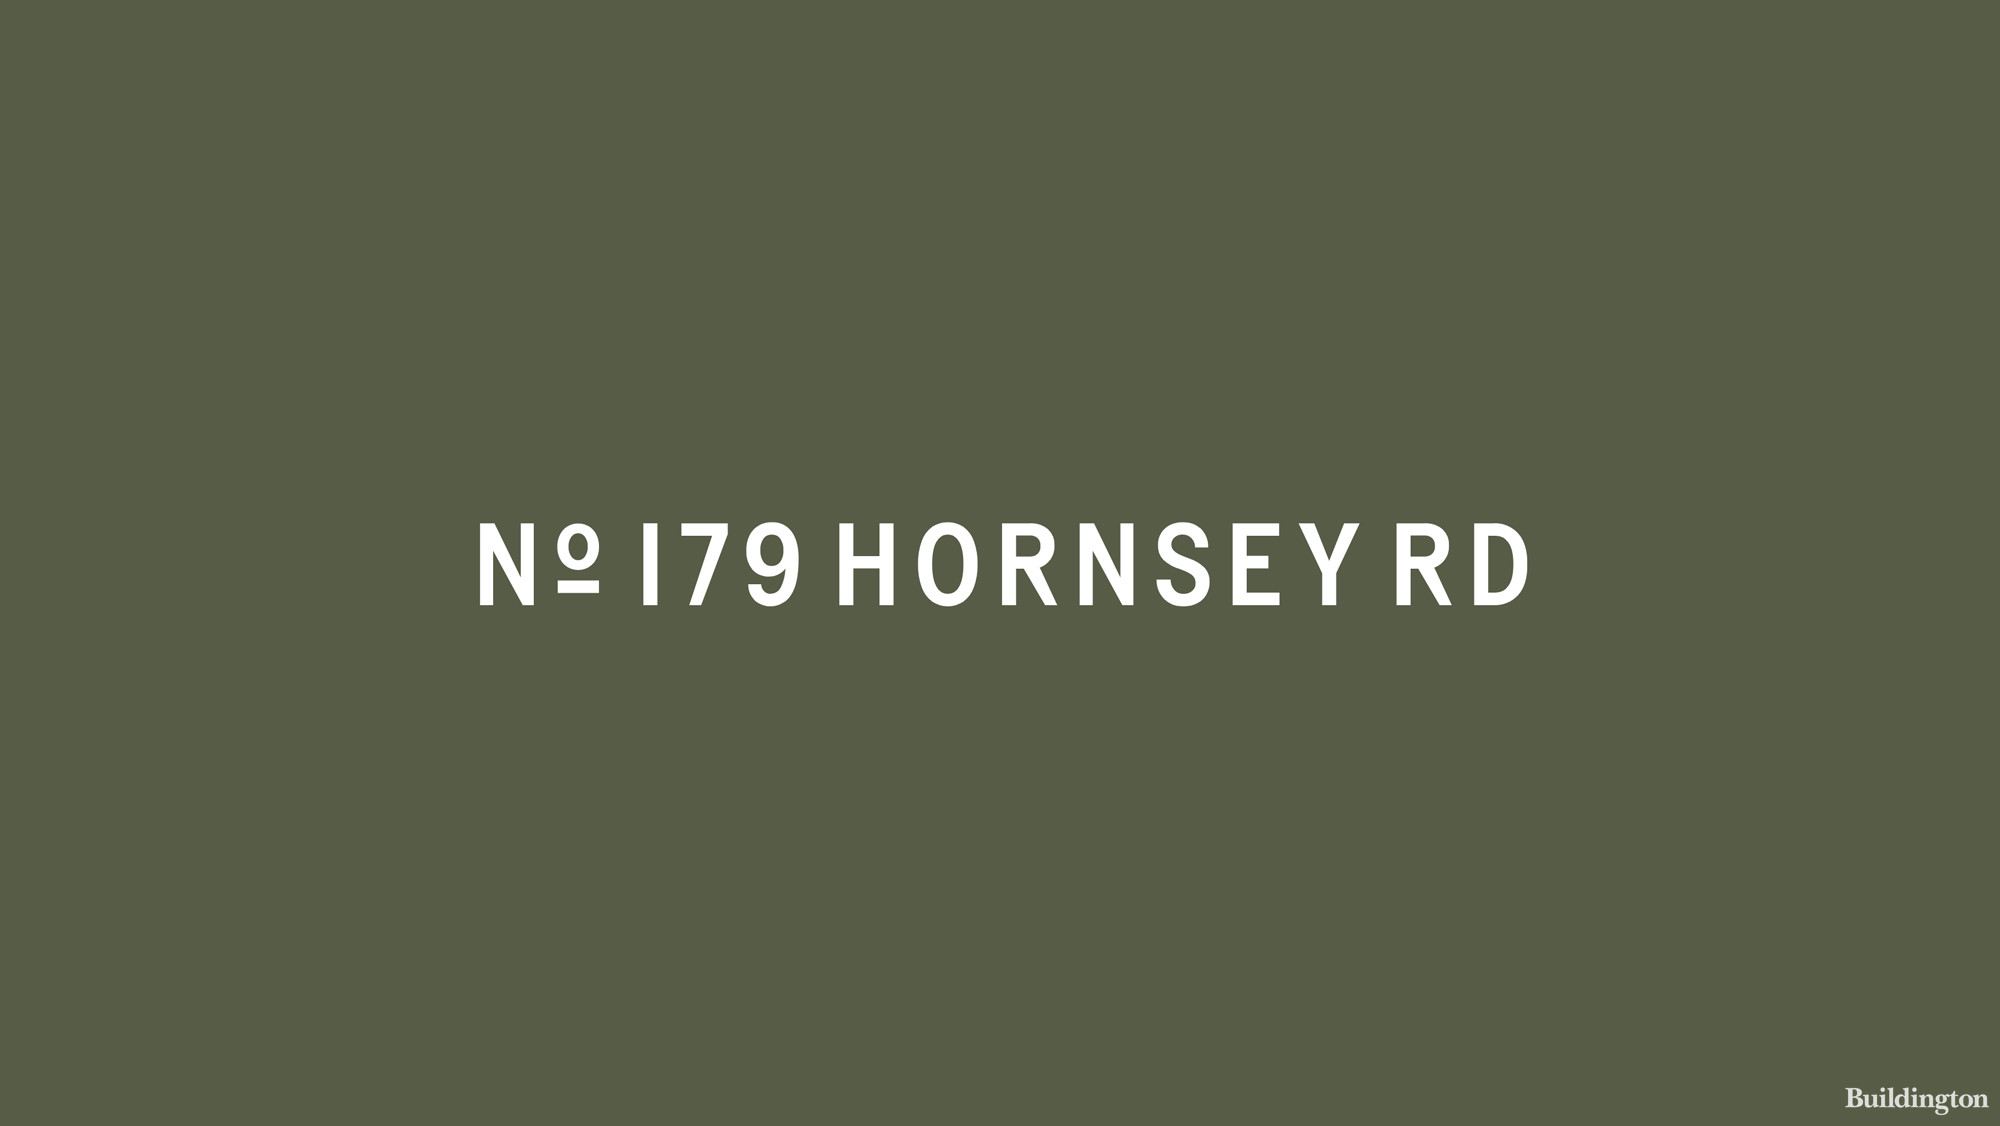 Logo cover 179 Hornsey Road ddevelopment in Islington, London N7